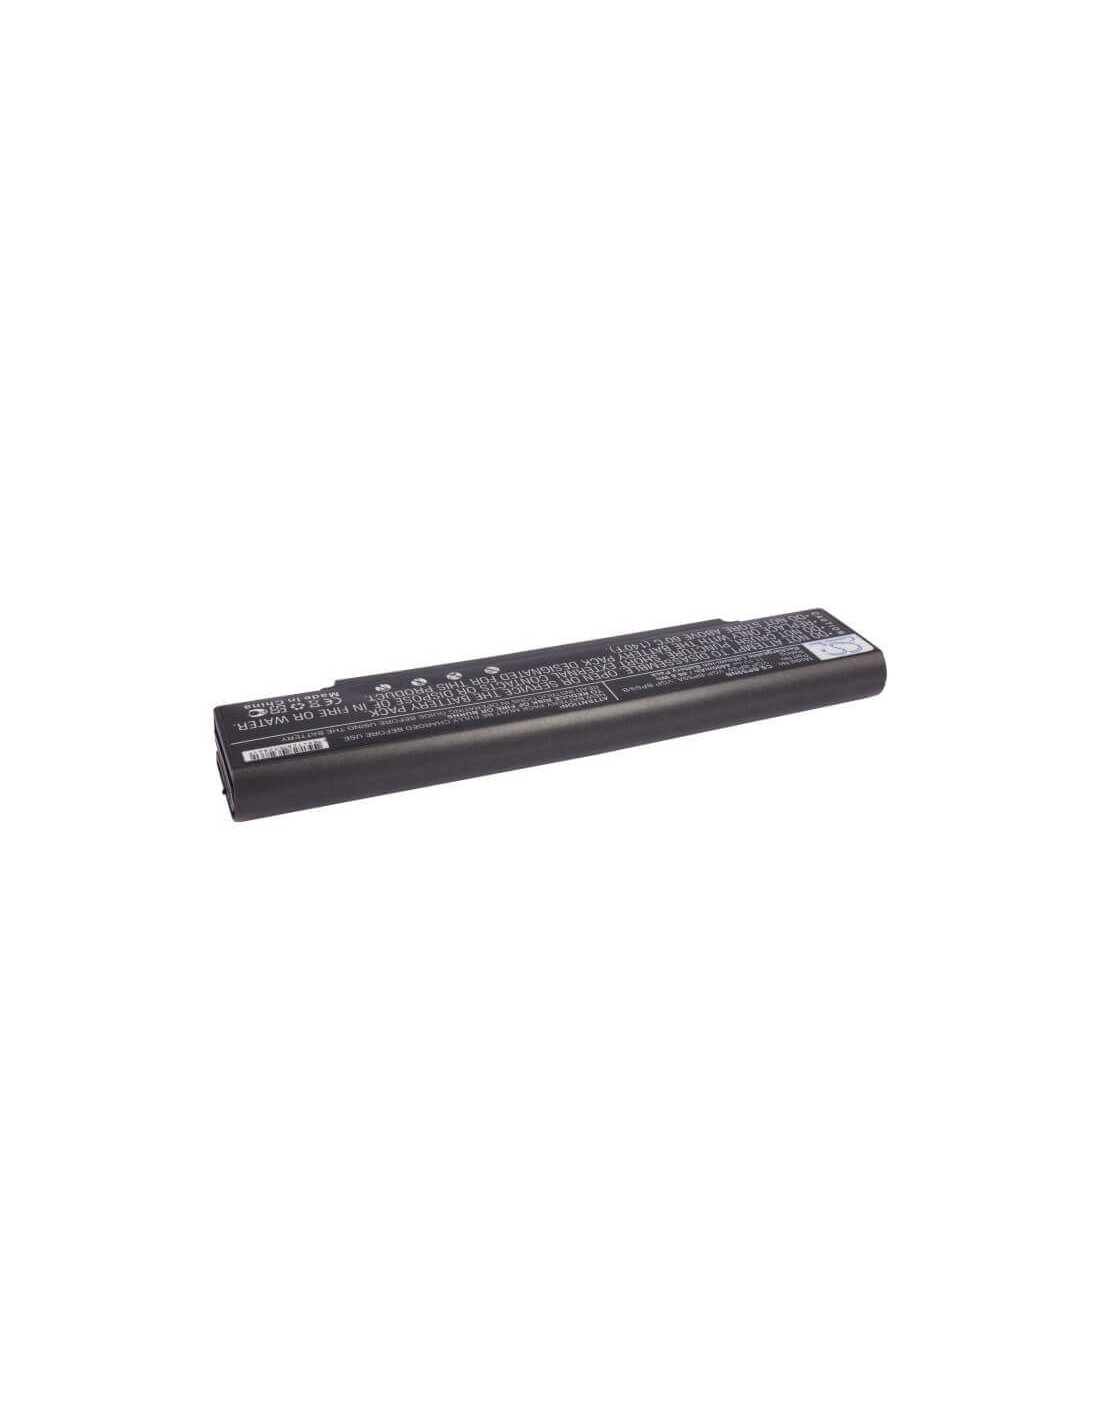 Black Battery for Sony Vaio Vgn-ar41e, Vaio Vgn-ar41l, Vaio Vgn-ar41m 11.1V, 4400mAh - 48.84Wh